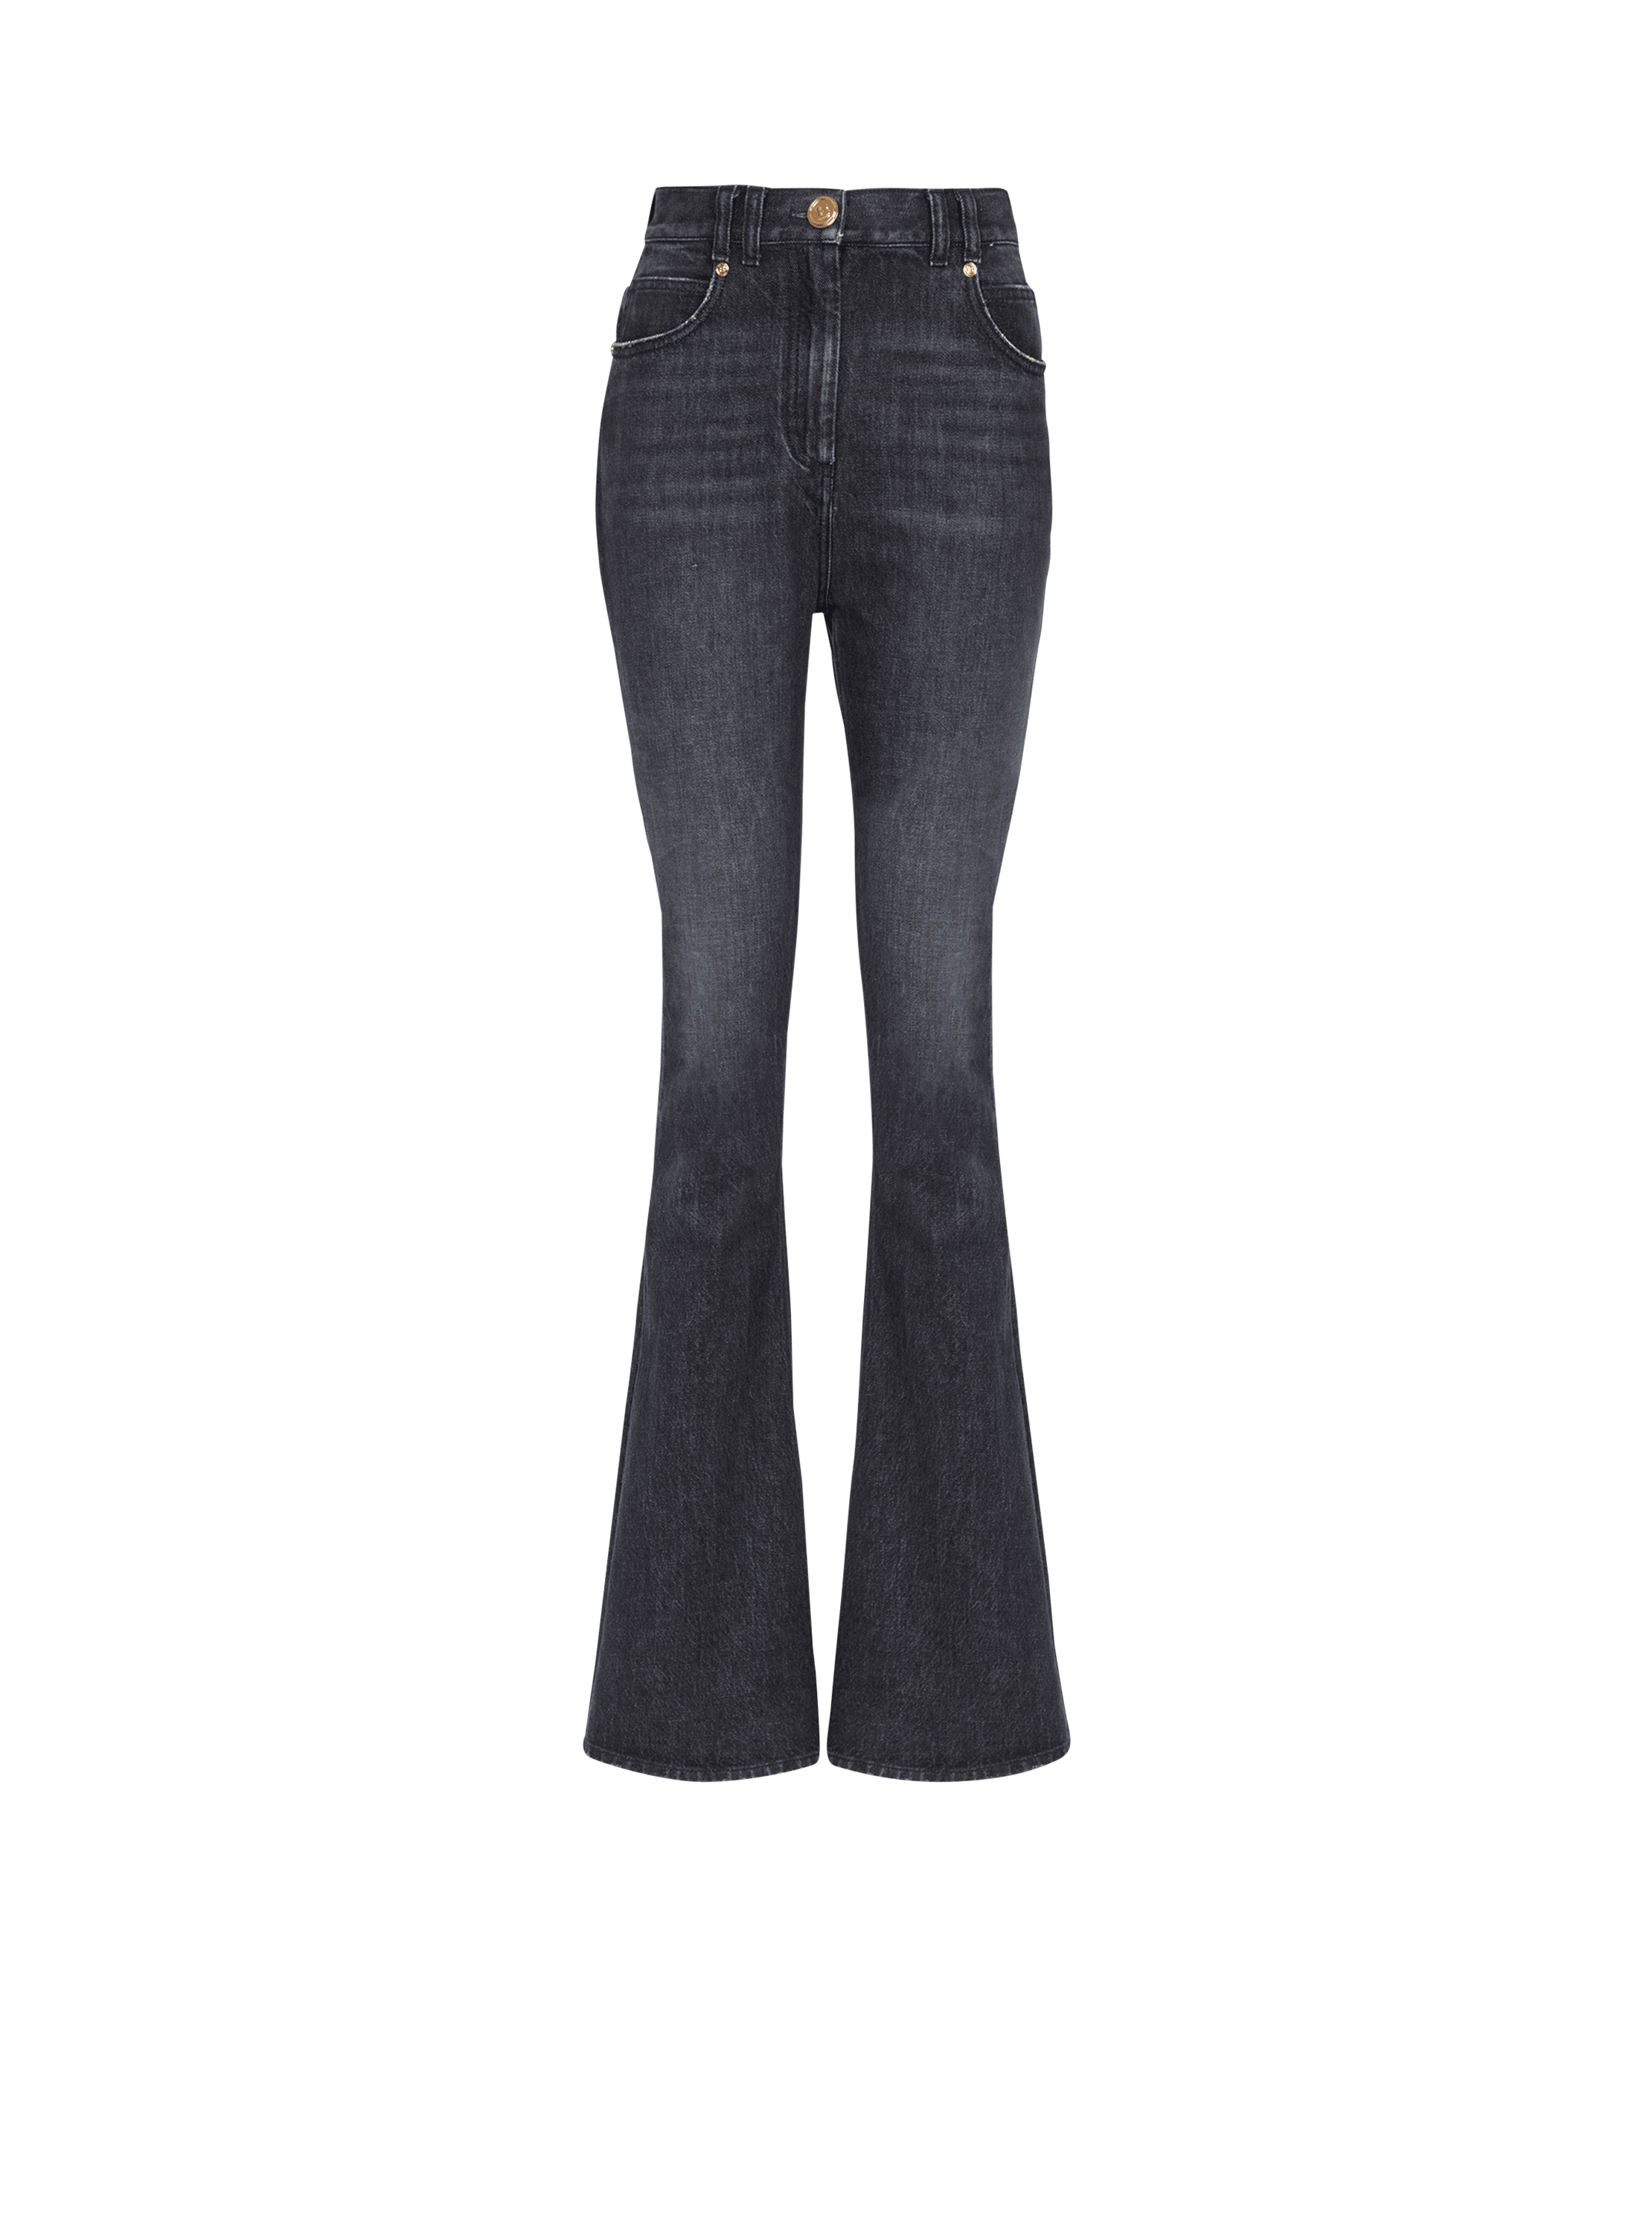 Bootcut-Jeans mit Bleach-Effekt im Öko-Design, schwarz, hi-res